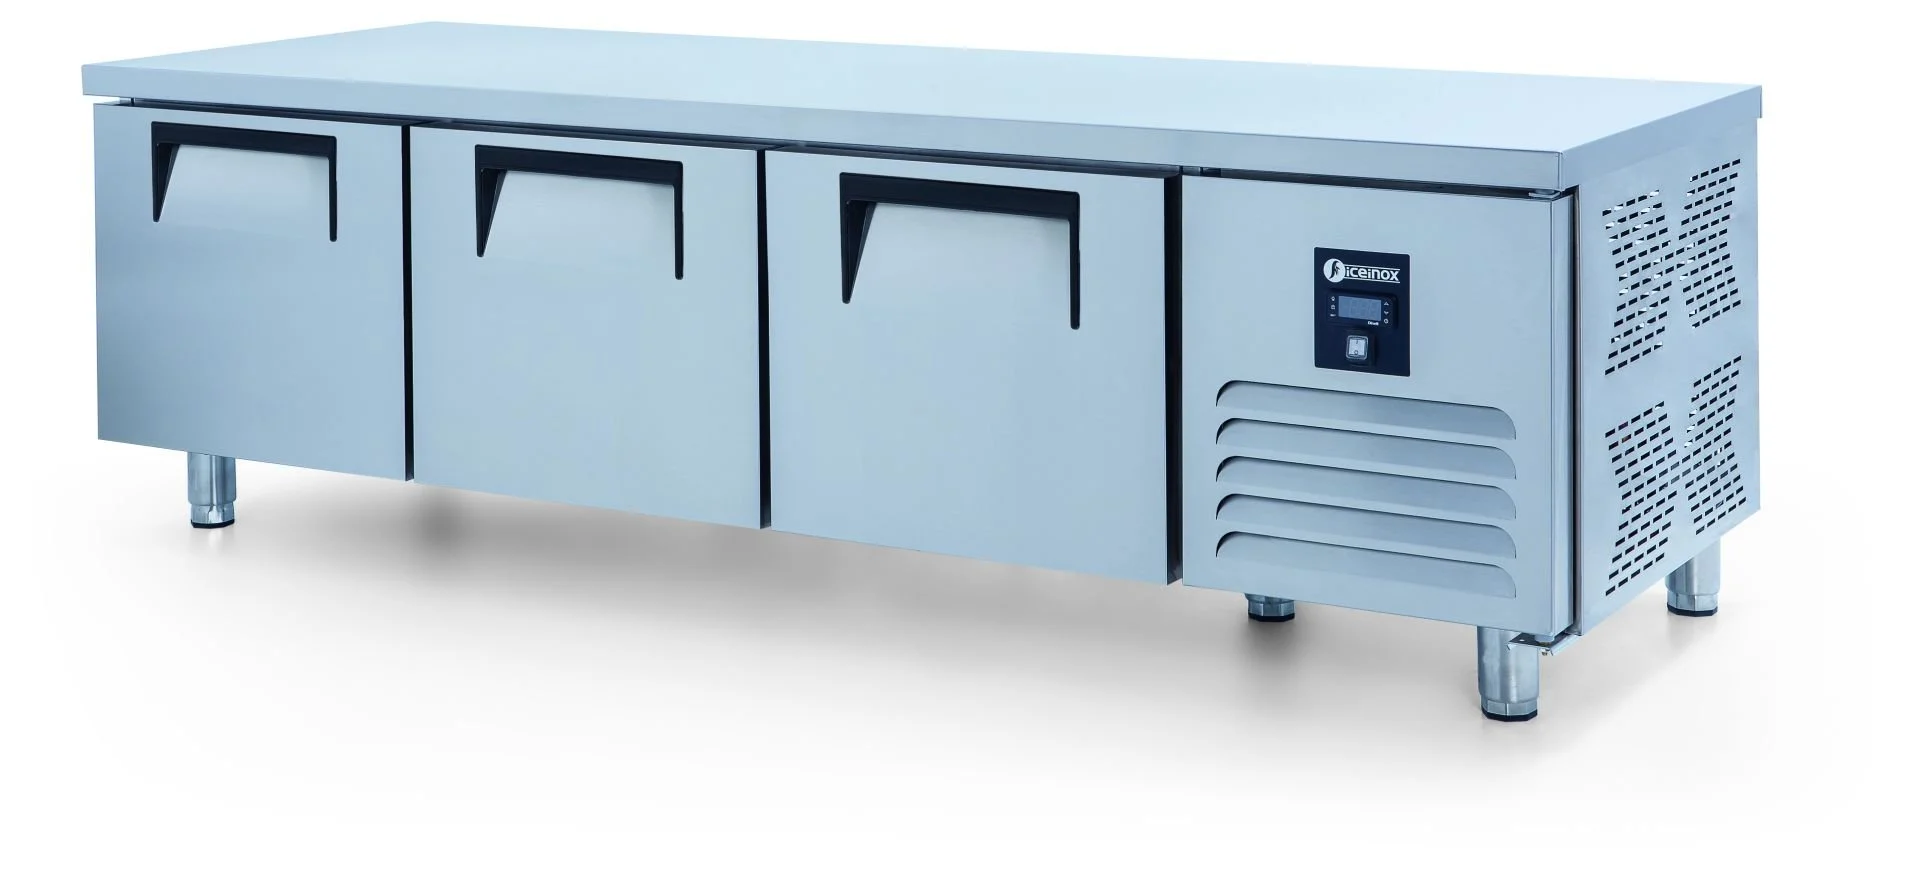 ICEINOX - Iceinox UTS 280 CR Pişirici Altı Buzdolabı, 3 Kapılı, 280 L